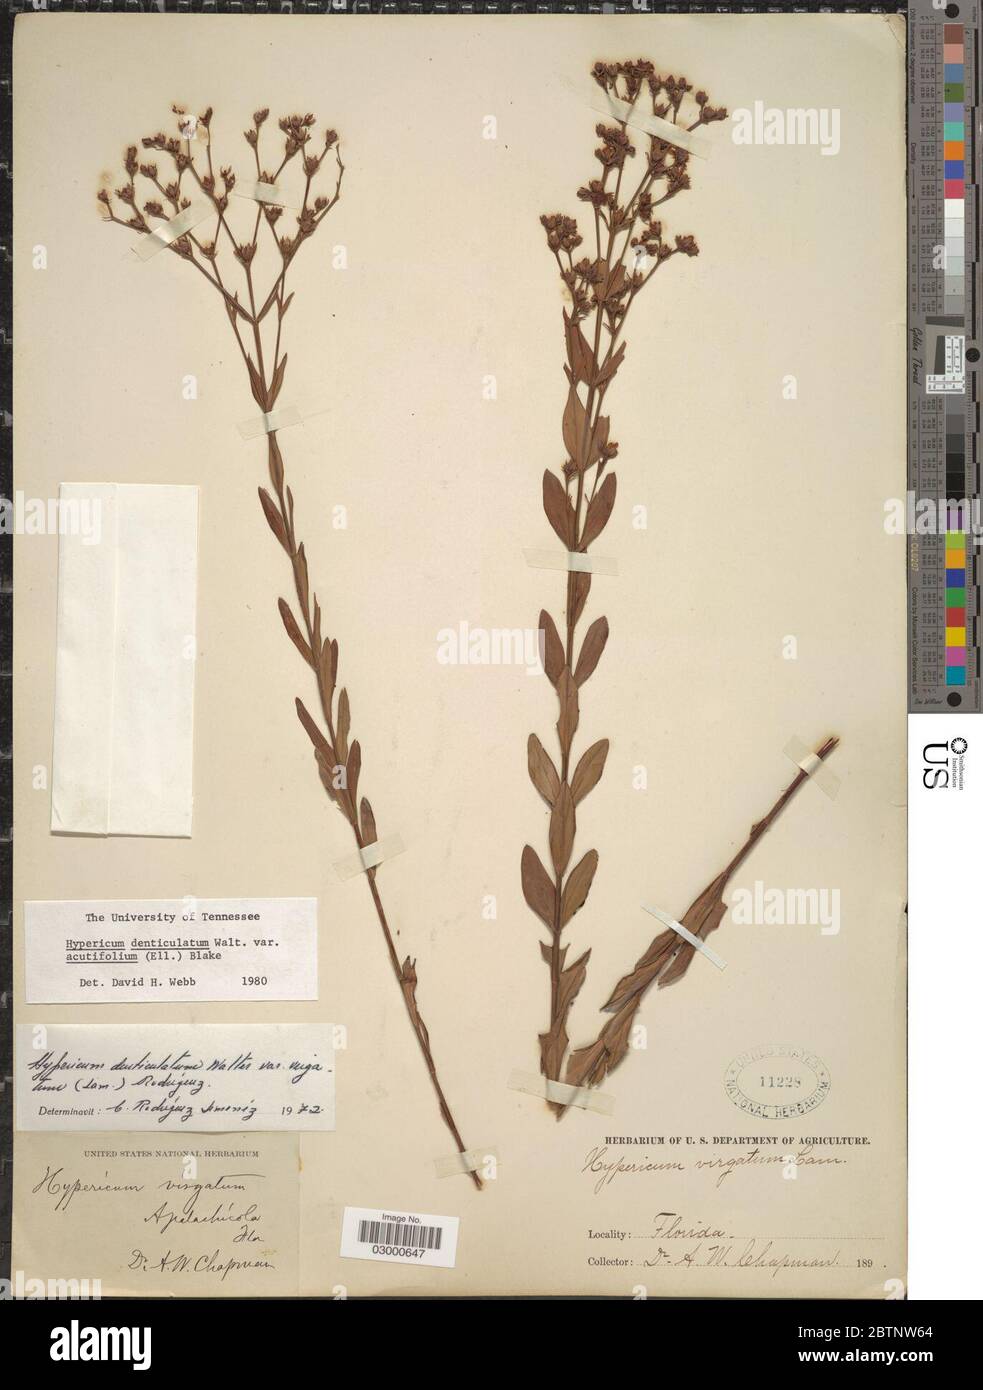 Hypericum denticulatum var acutifolium Elliott N Robson. Stock Photo